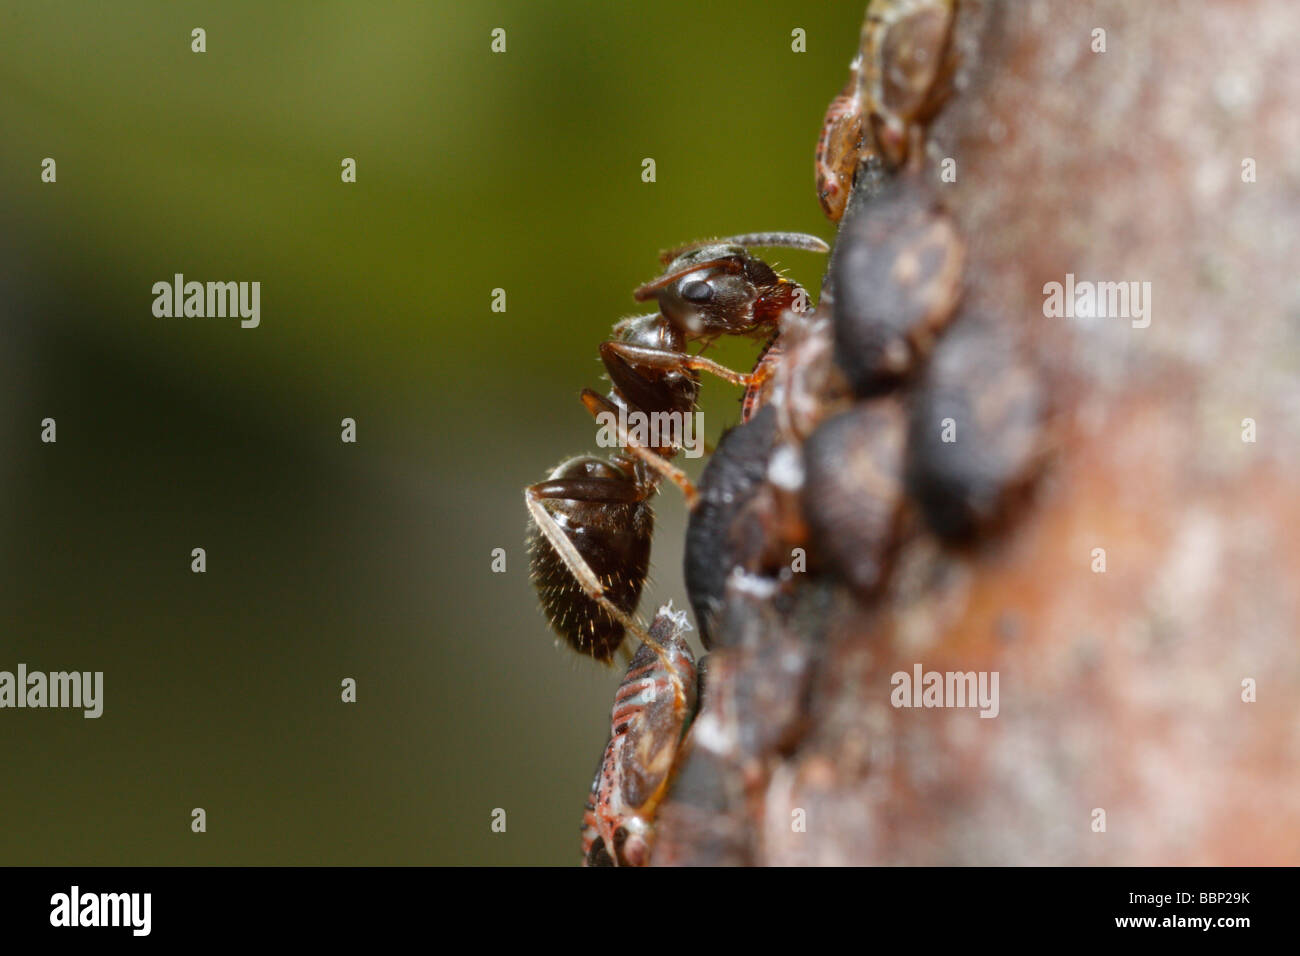 Hormiga negra de jardín (Lasius niger) ordeñar una psï¿½ido, Cacopsylla pyri (pear psylla, perales sucker) Foto de stock